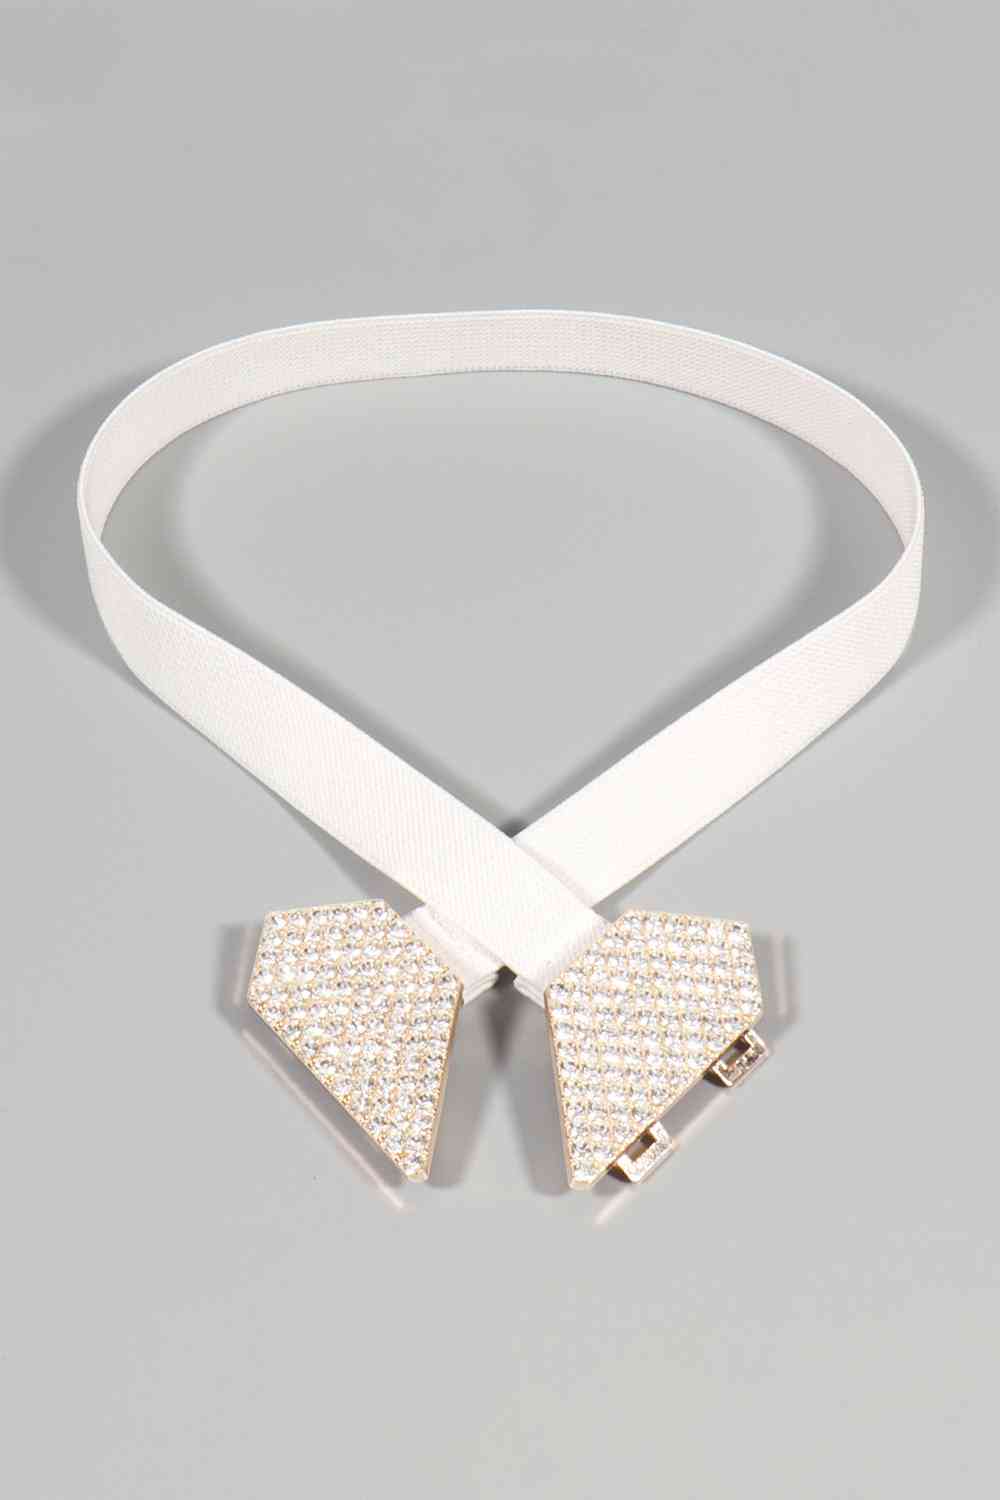 Cinturón elástico con hebilla de corazón de diamantes de imitación